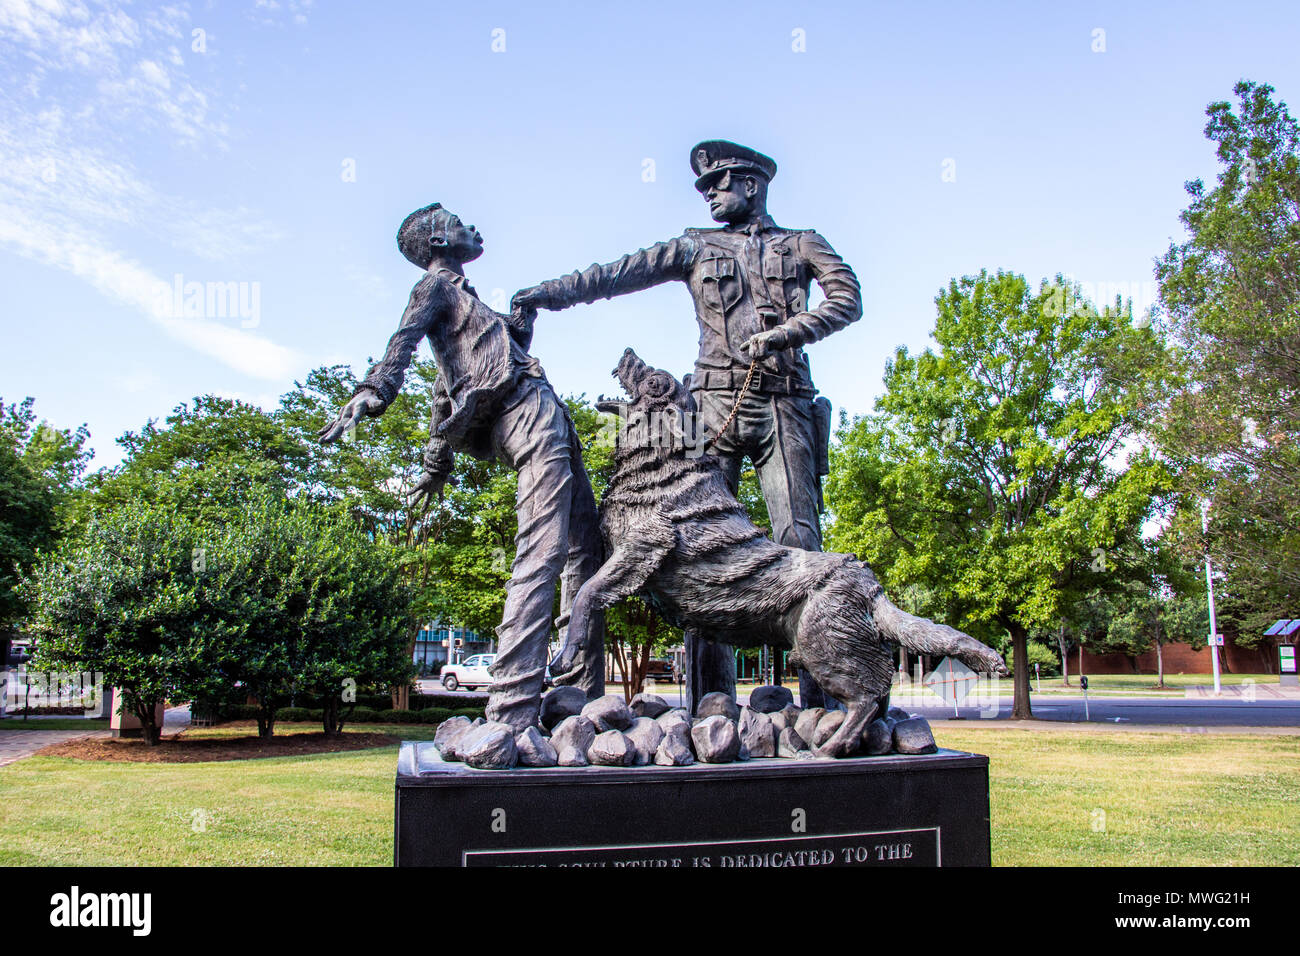 Le fantassin, statue sculptée par Ronald S McDowell, Kelly Ingram Park, Birmingham, Alabama, USA Banque D'Images